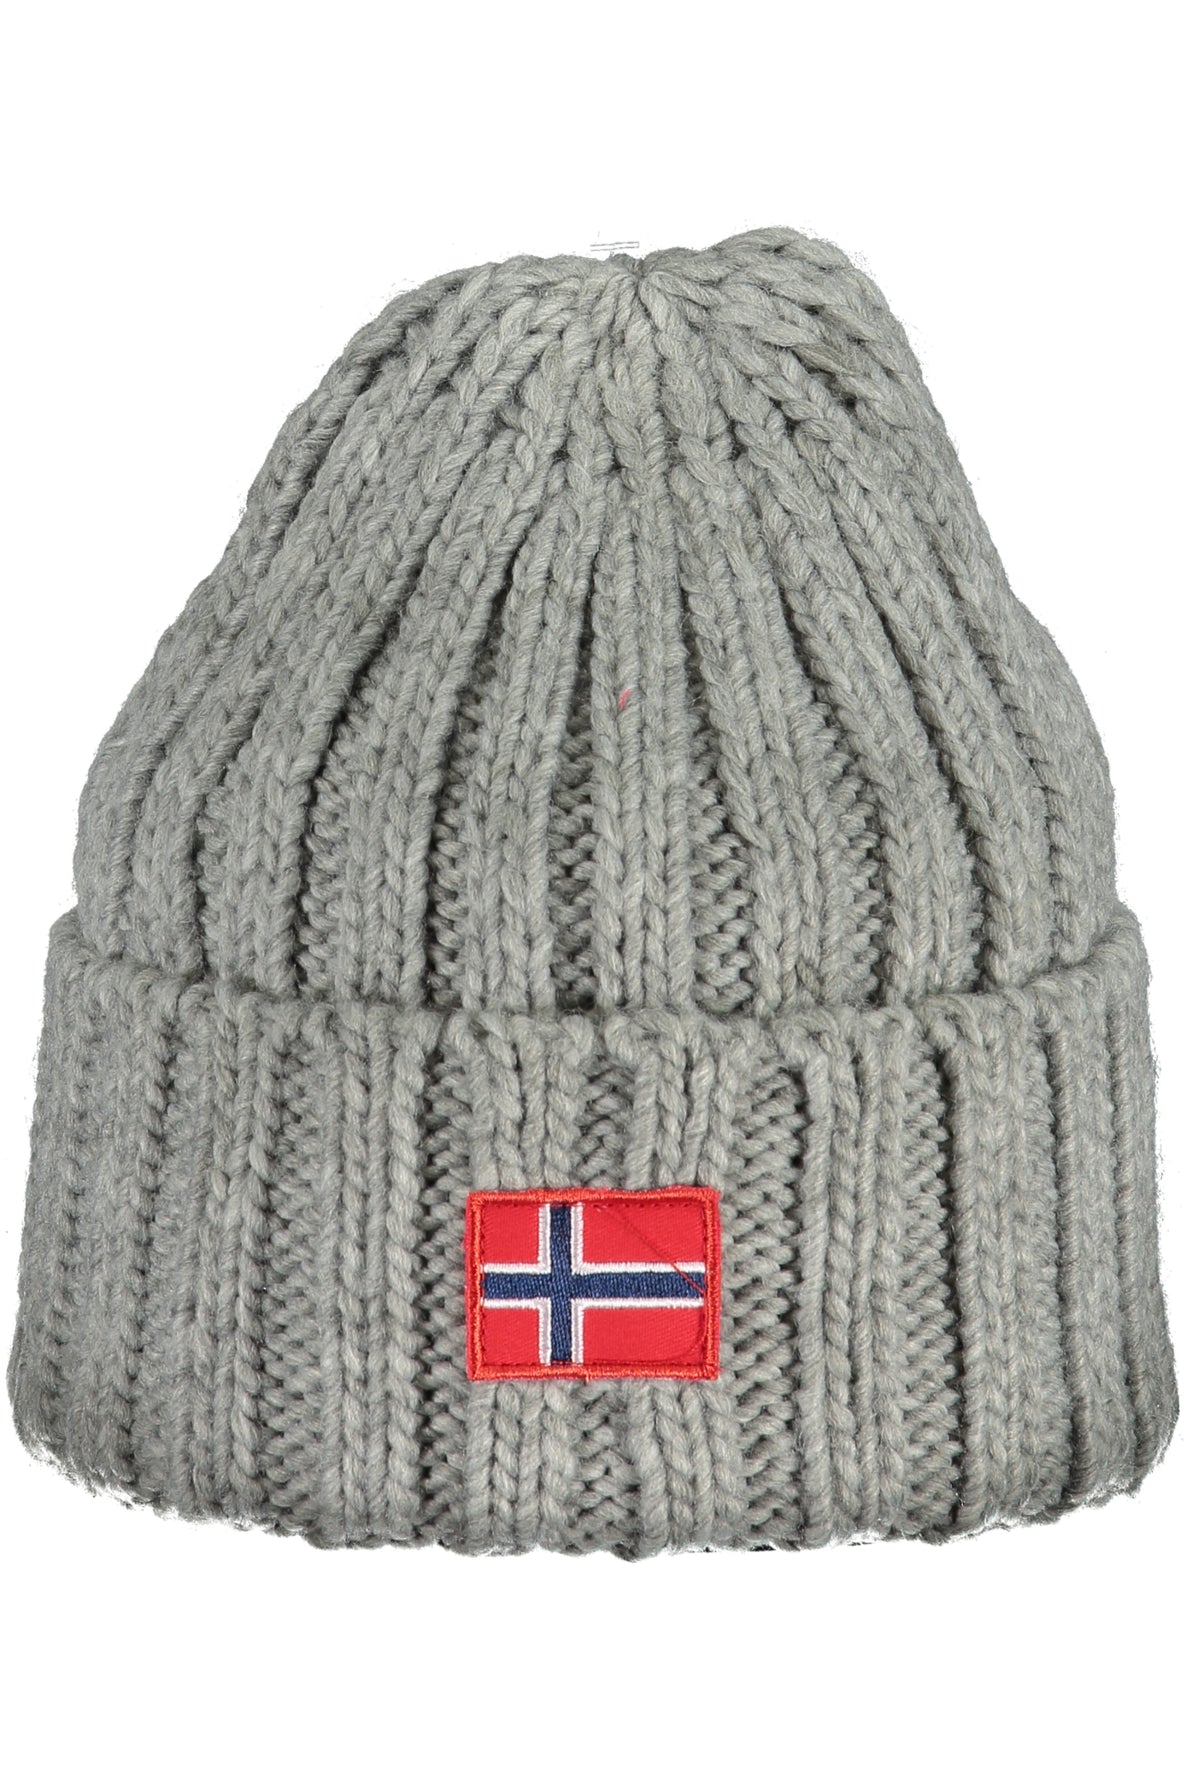 NORWAY 1963